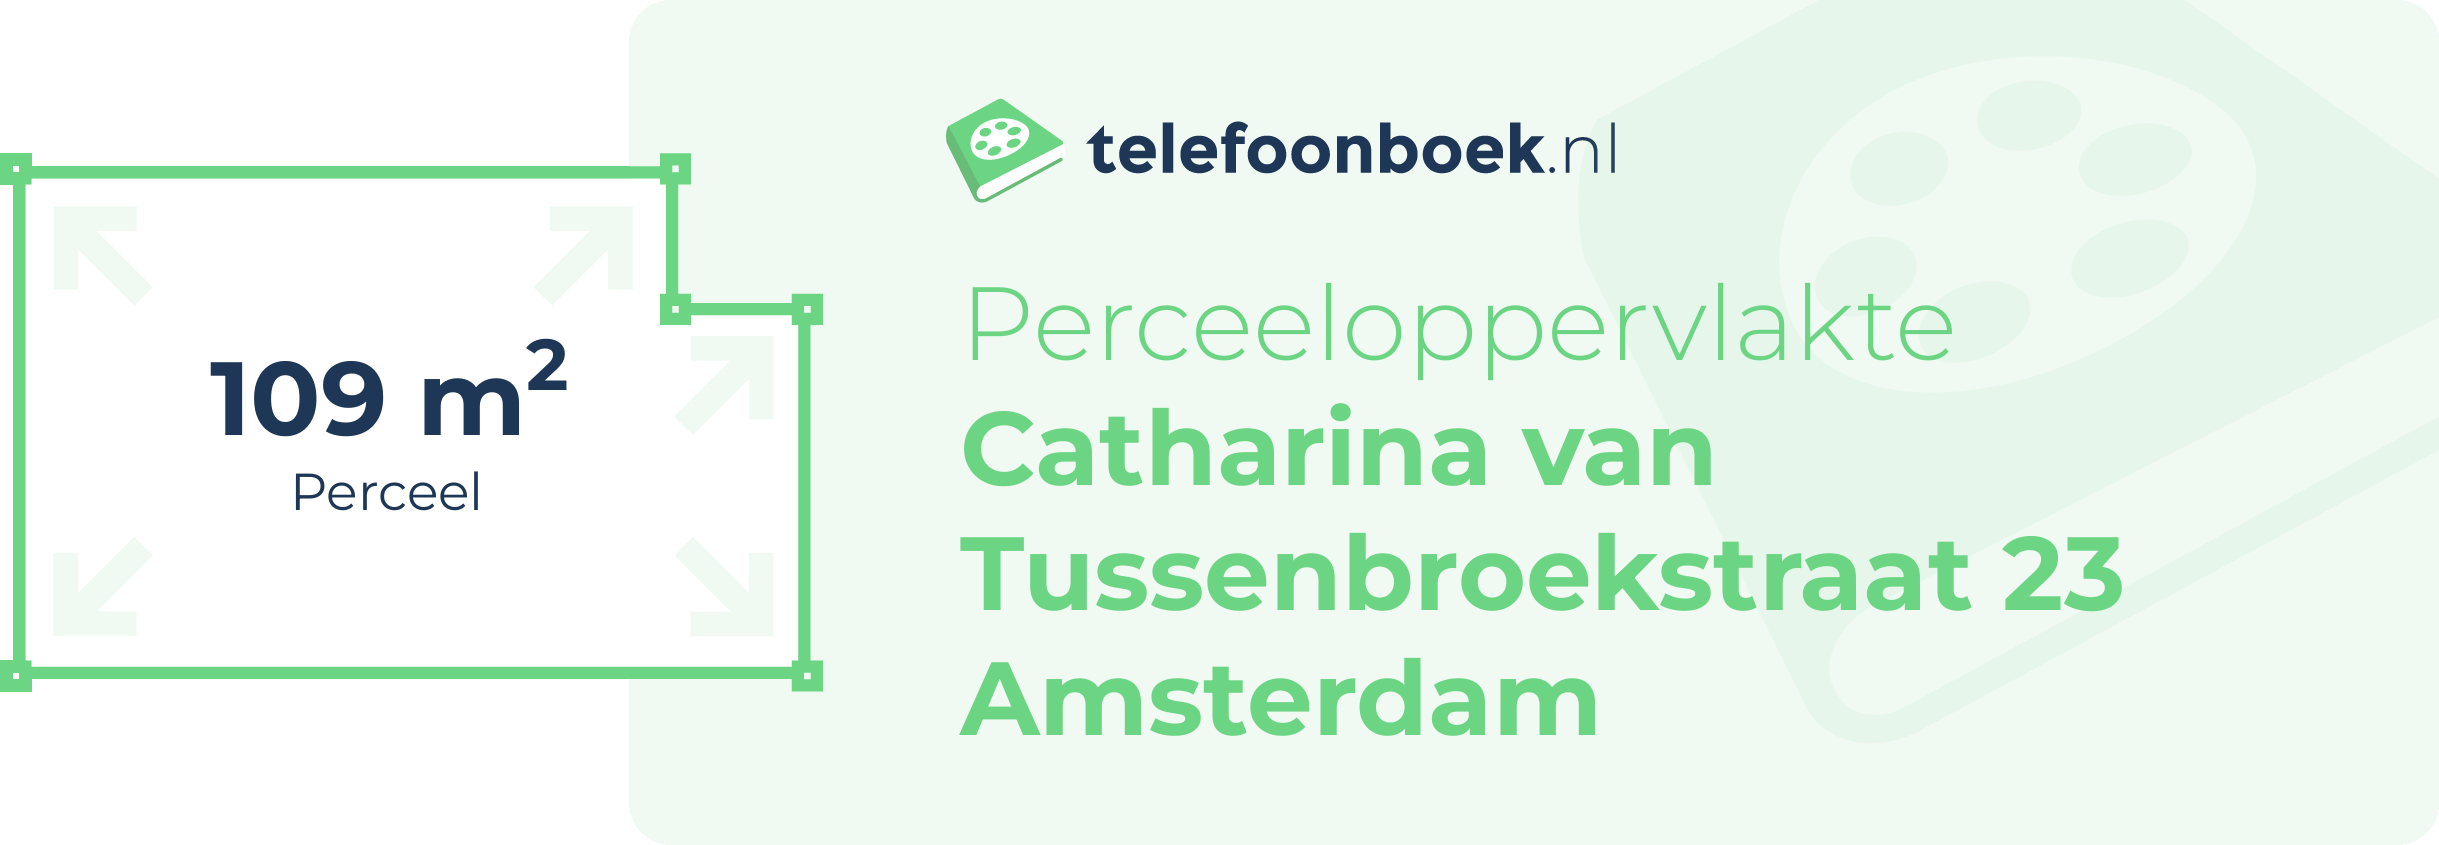 Perceeloppervlakte Catharina Van Tussenbroekstraat 23 Amsterdam